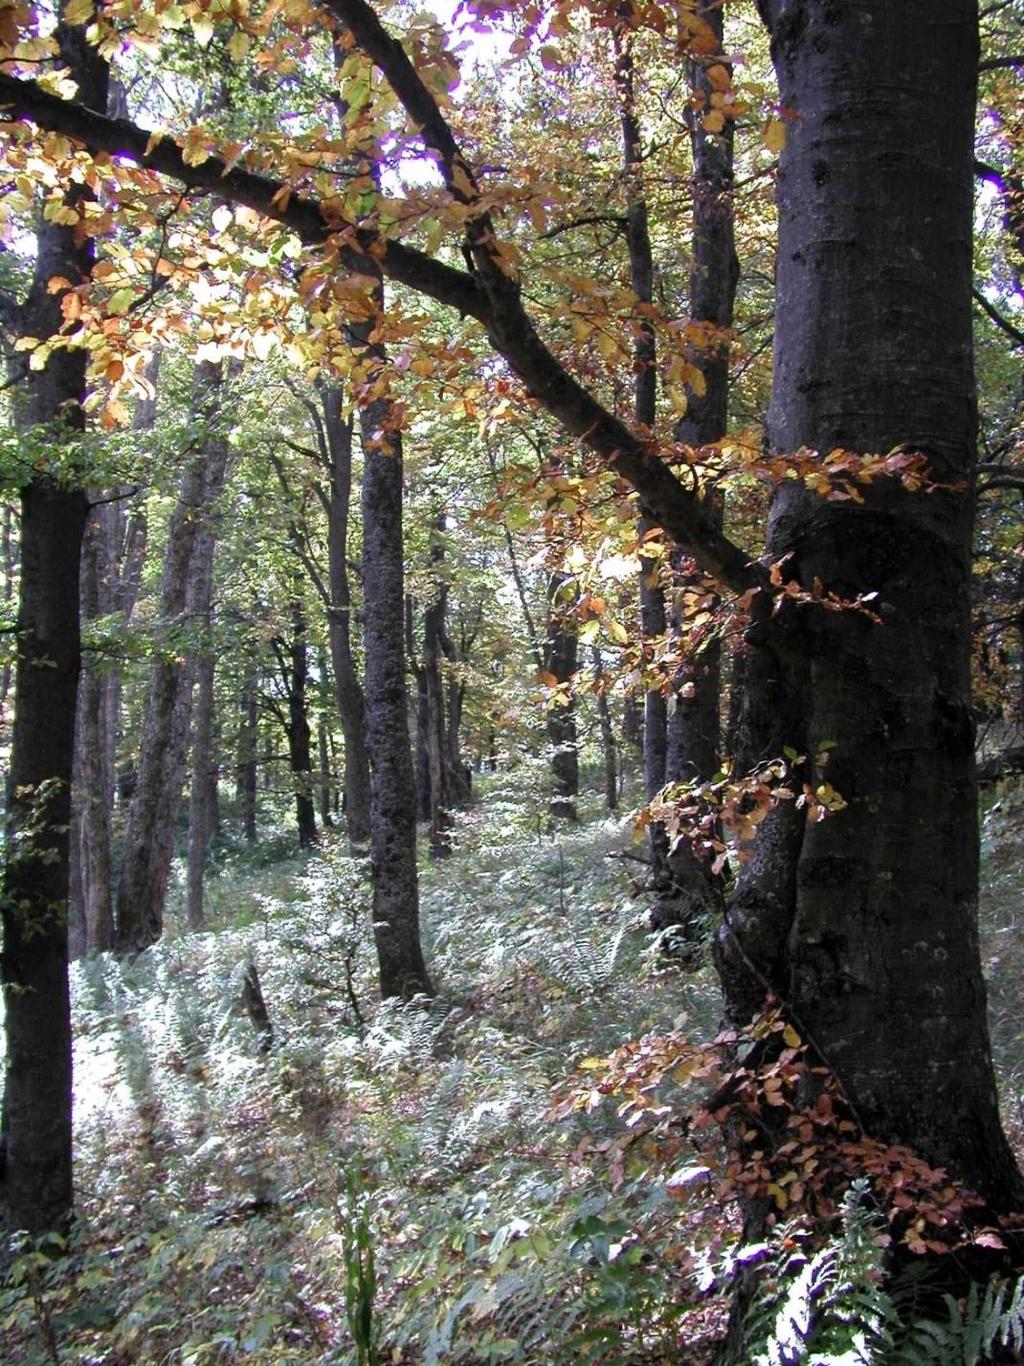 Obr. 2: Národná prírodná rezervácia Ľubietovský Vepor predstavuje jedno z najväčších jadier biosférickej rezervácie Poľana. Predmetom ochrany sú spoločenstvá jedľových bučín (foto P. Urban).